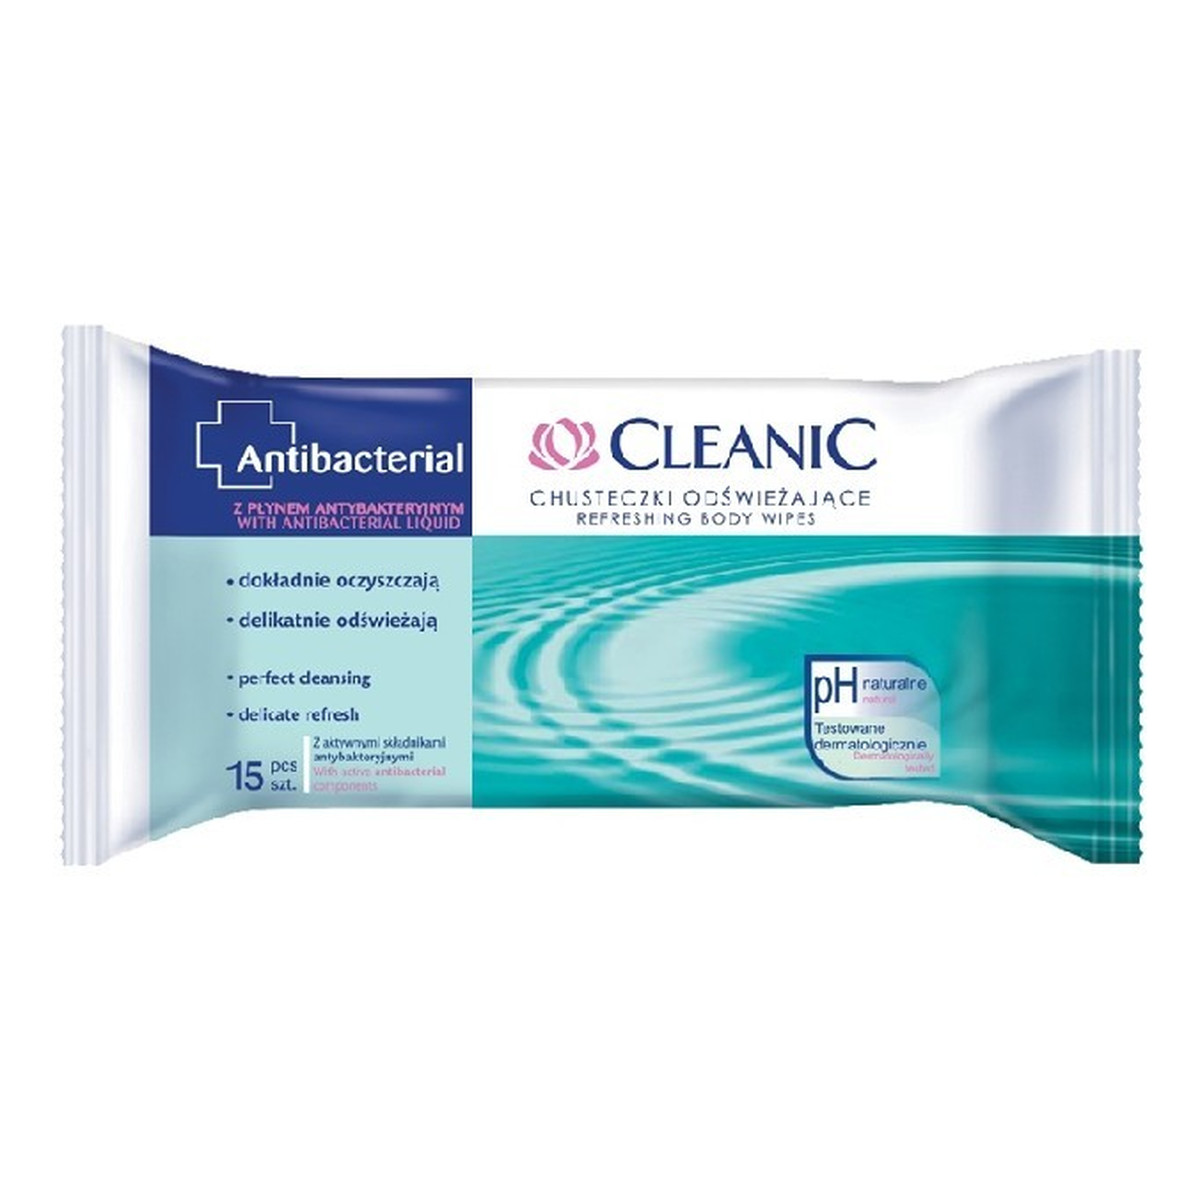 Cleanic Antibacterial Chusteczki odświeżające z płynem antybakteryjnym 3 x 15 sztuk